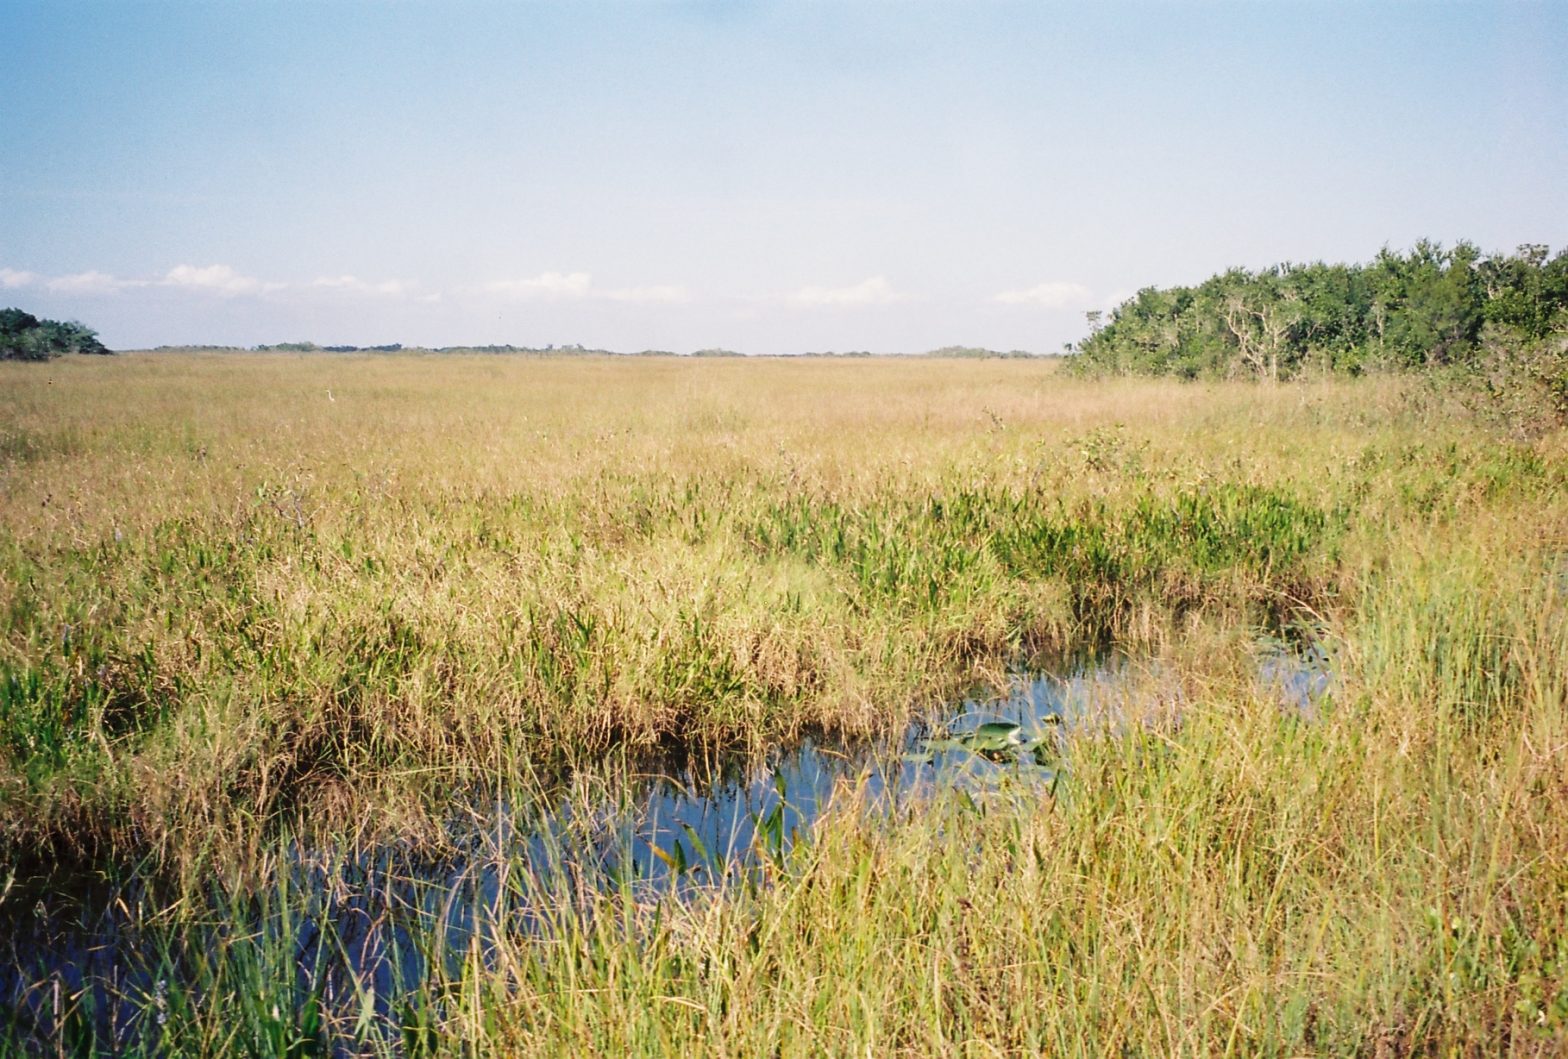 House Delegation Seeks Infrastructure Funds for Everglades Restoration